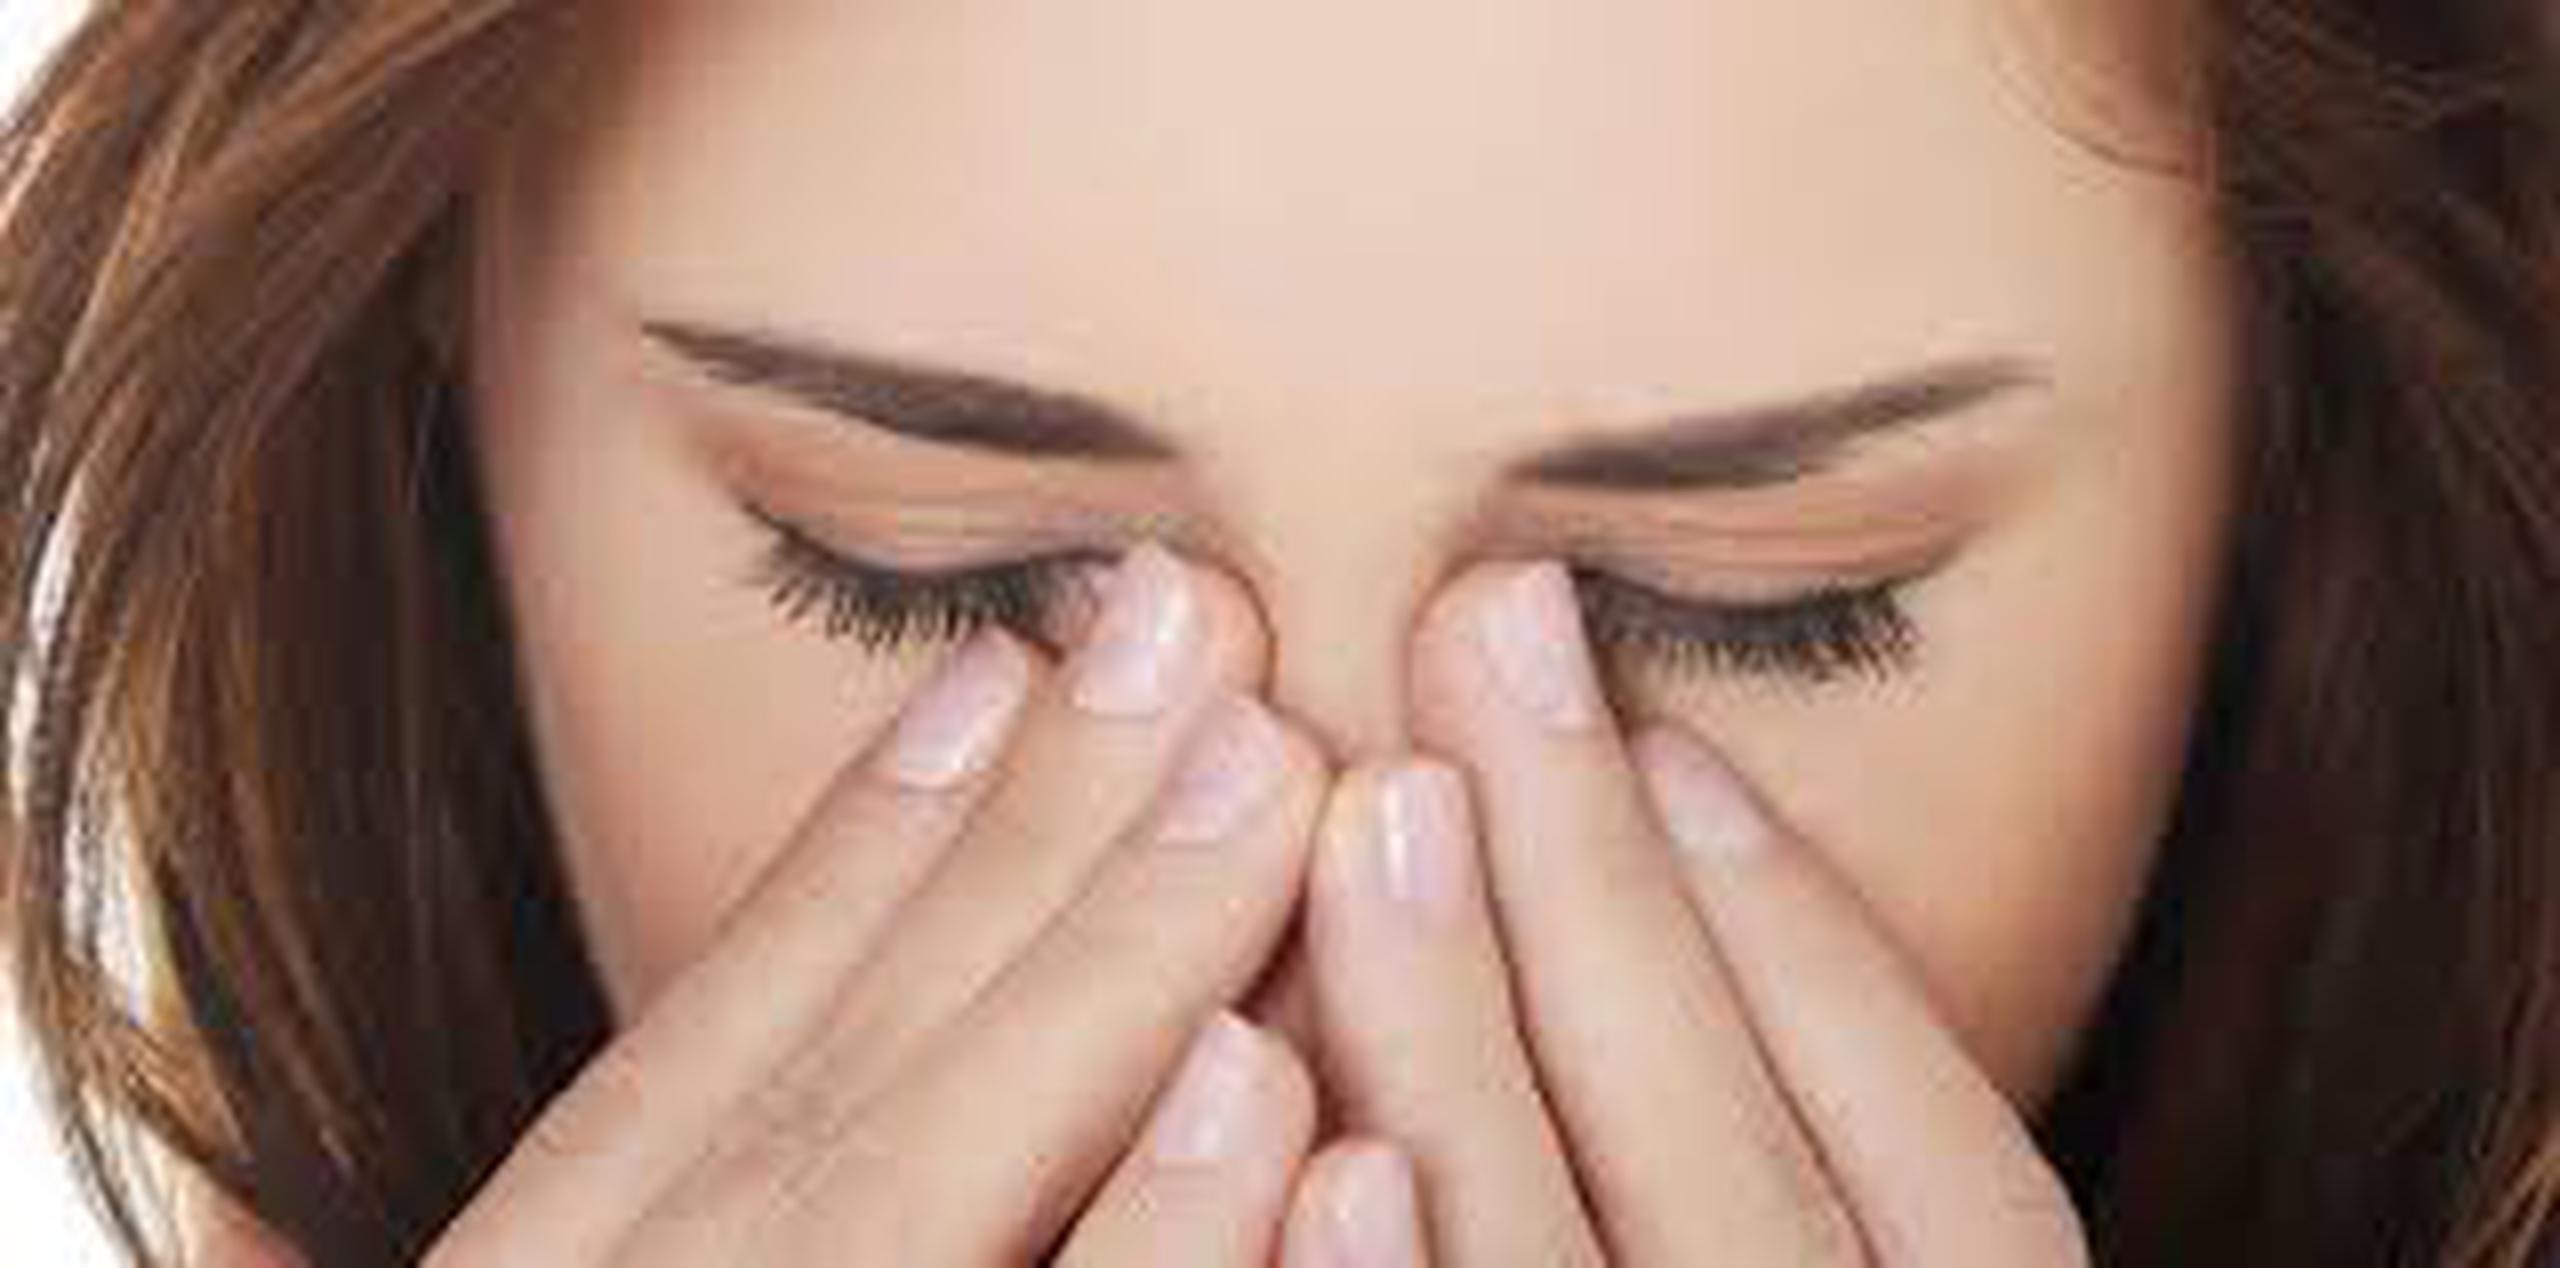 La conjuntivitis viral es bien contagiosa y dependiendo de la severidad de los síntomas se puede tratar desde con lágrimas artificiales hasta antinflamatorios. (Archivo)